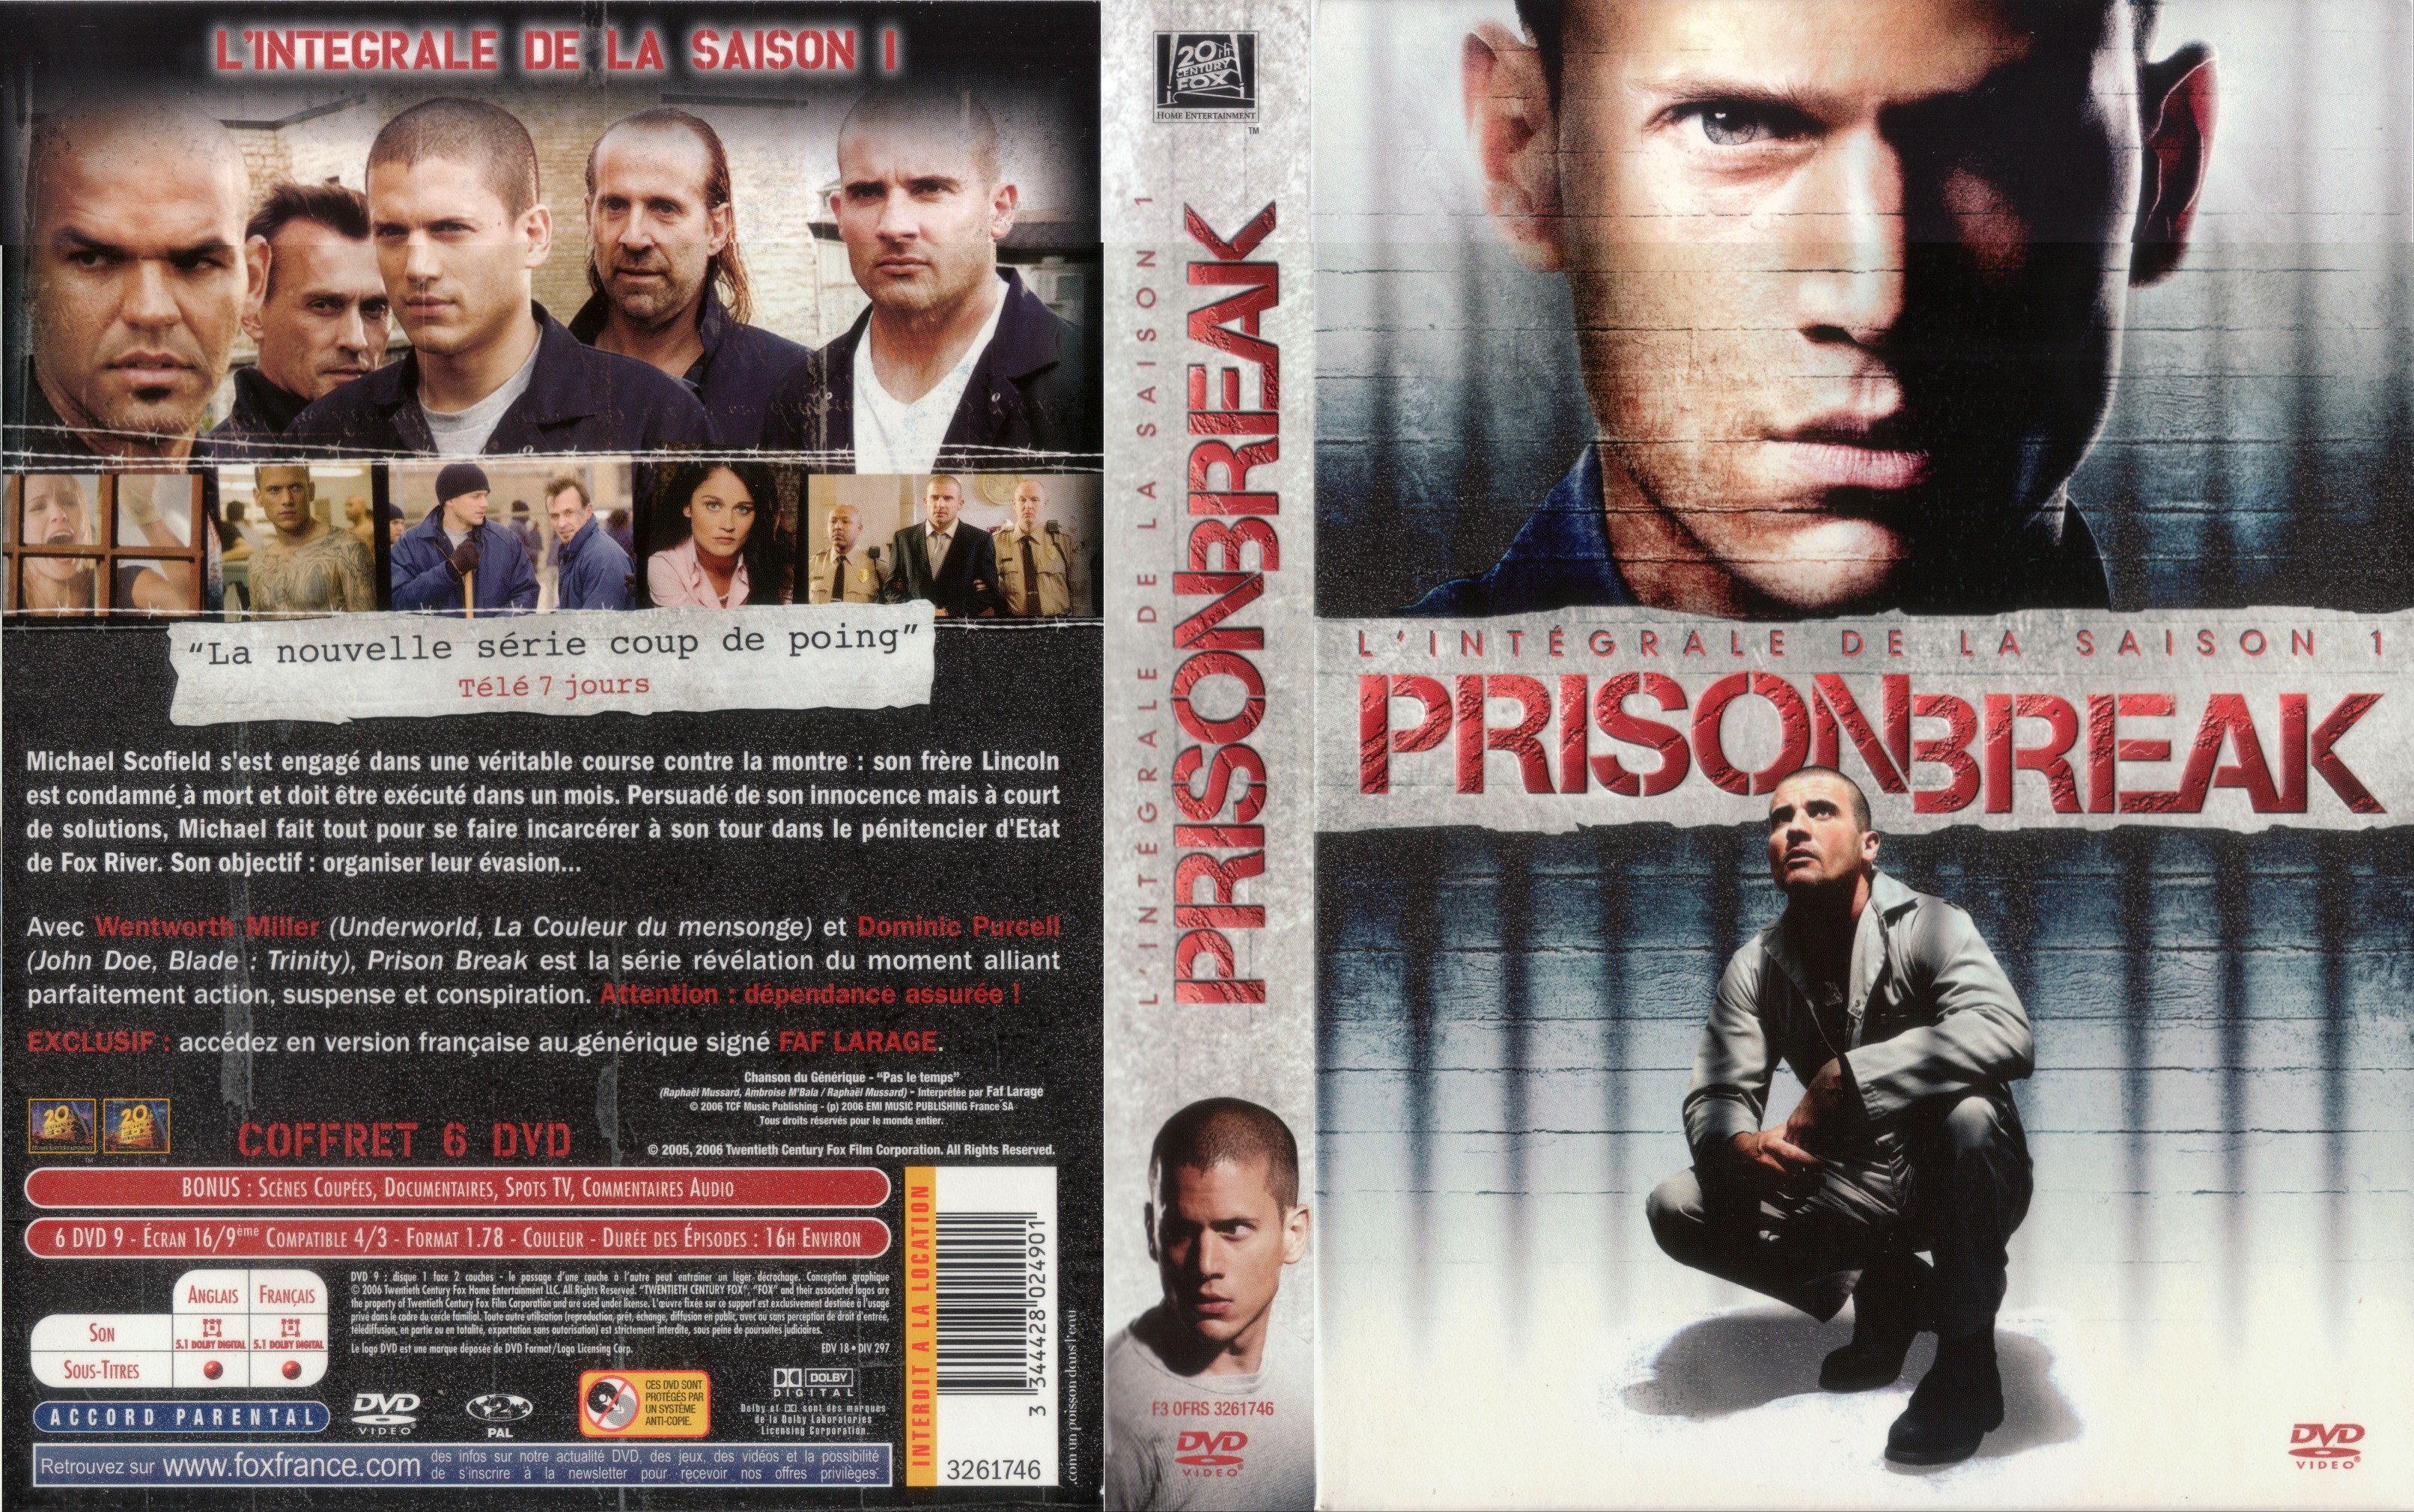 Jaquette DVD Prison break saison 1 COFFRET